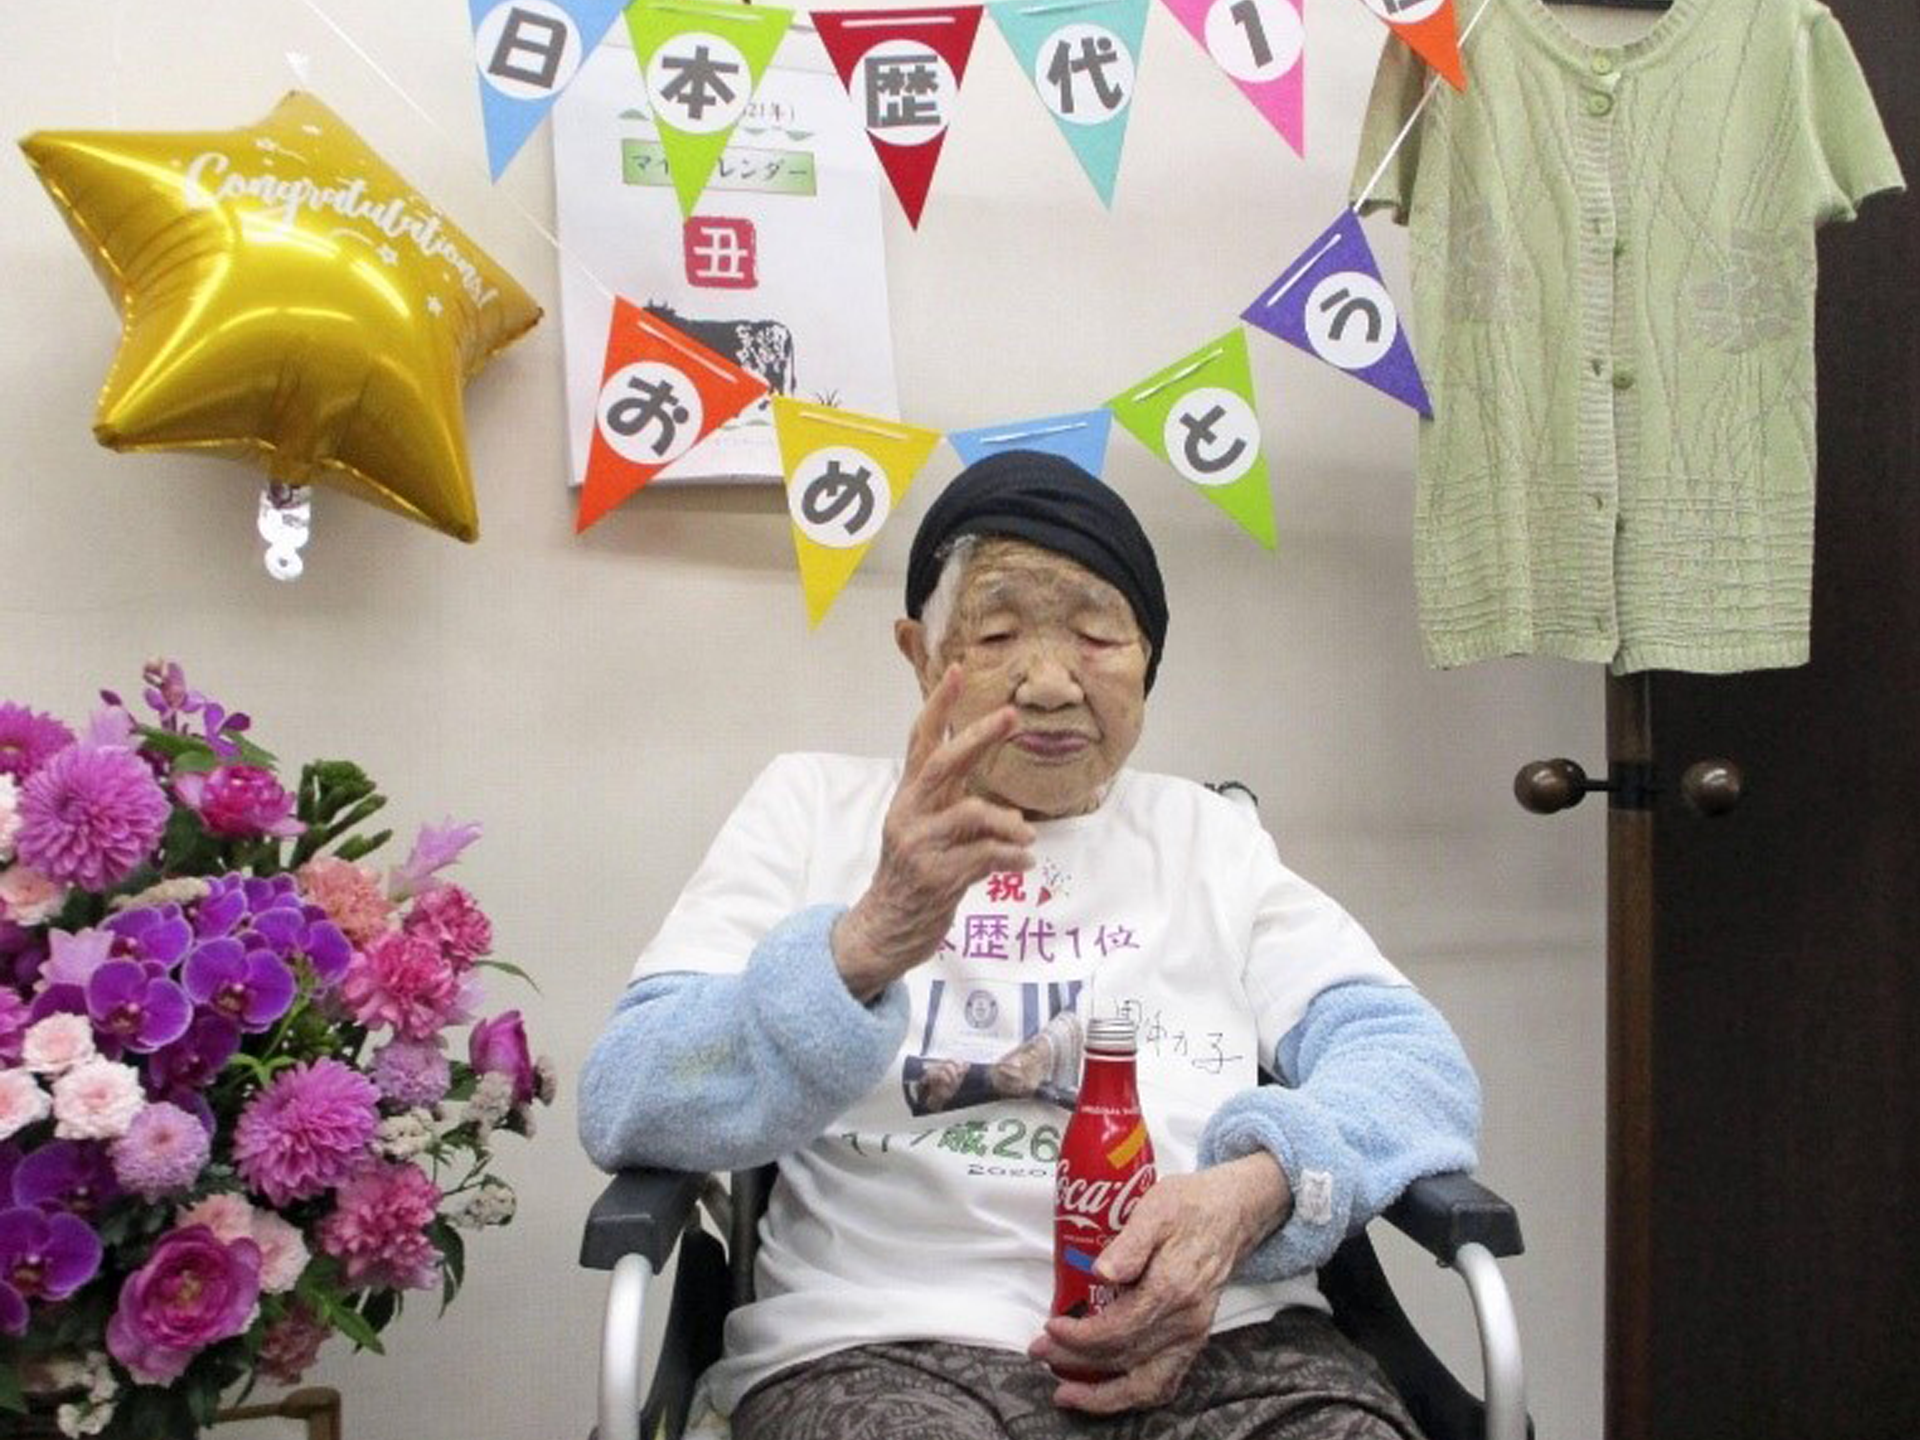 แชมป์หลายปีซ้อน...คุณยายทวดชาวญี่ปุ่นที่มีอายุยืนยาวที่สุดในโลกที่ยังมีชีวิต